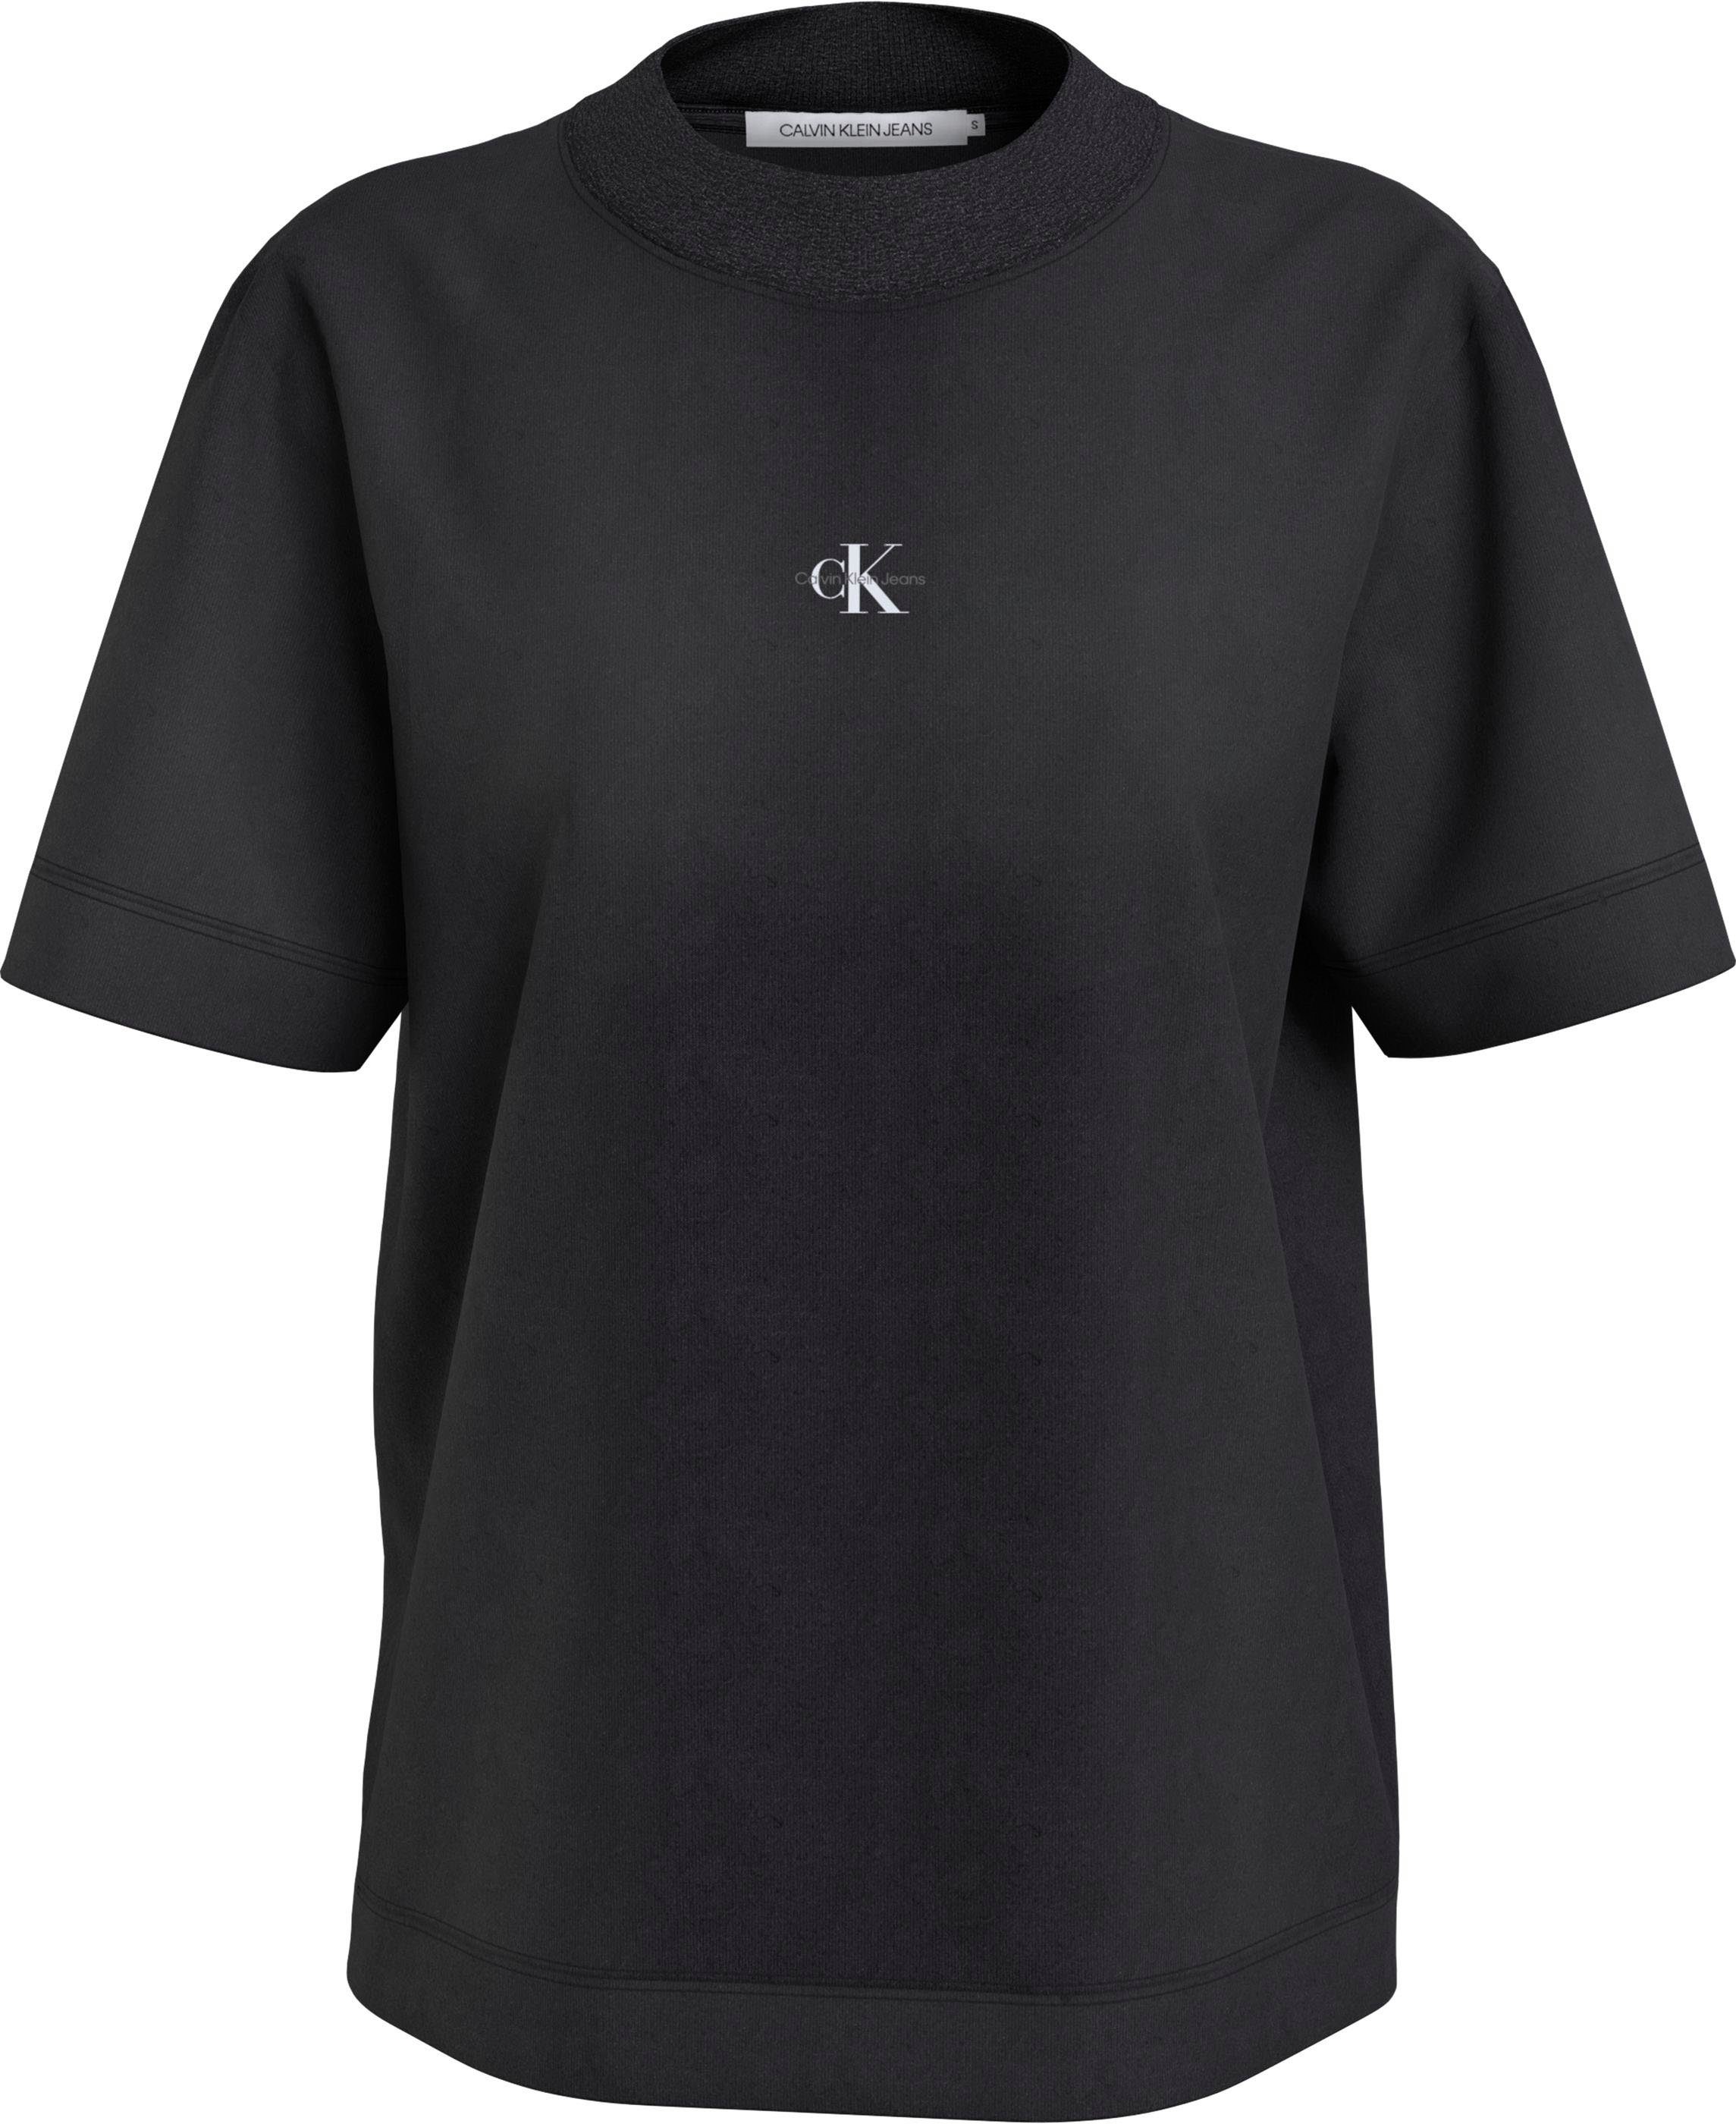 Honpo supergünstiger Versandhandel! Calvin Klein Black T-Shirt MIX Baumwolle RIB Jeans reiner TEE WASH Ck aus BOYFRIEND